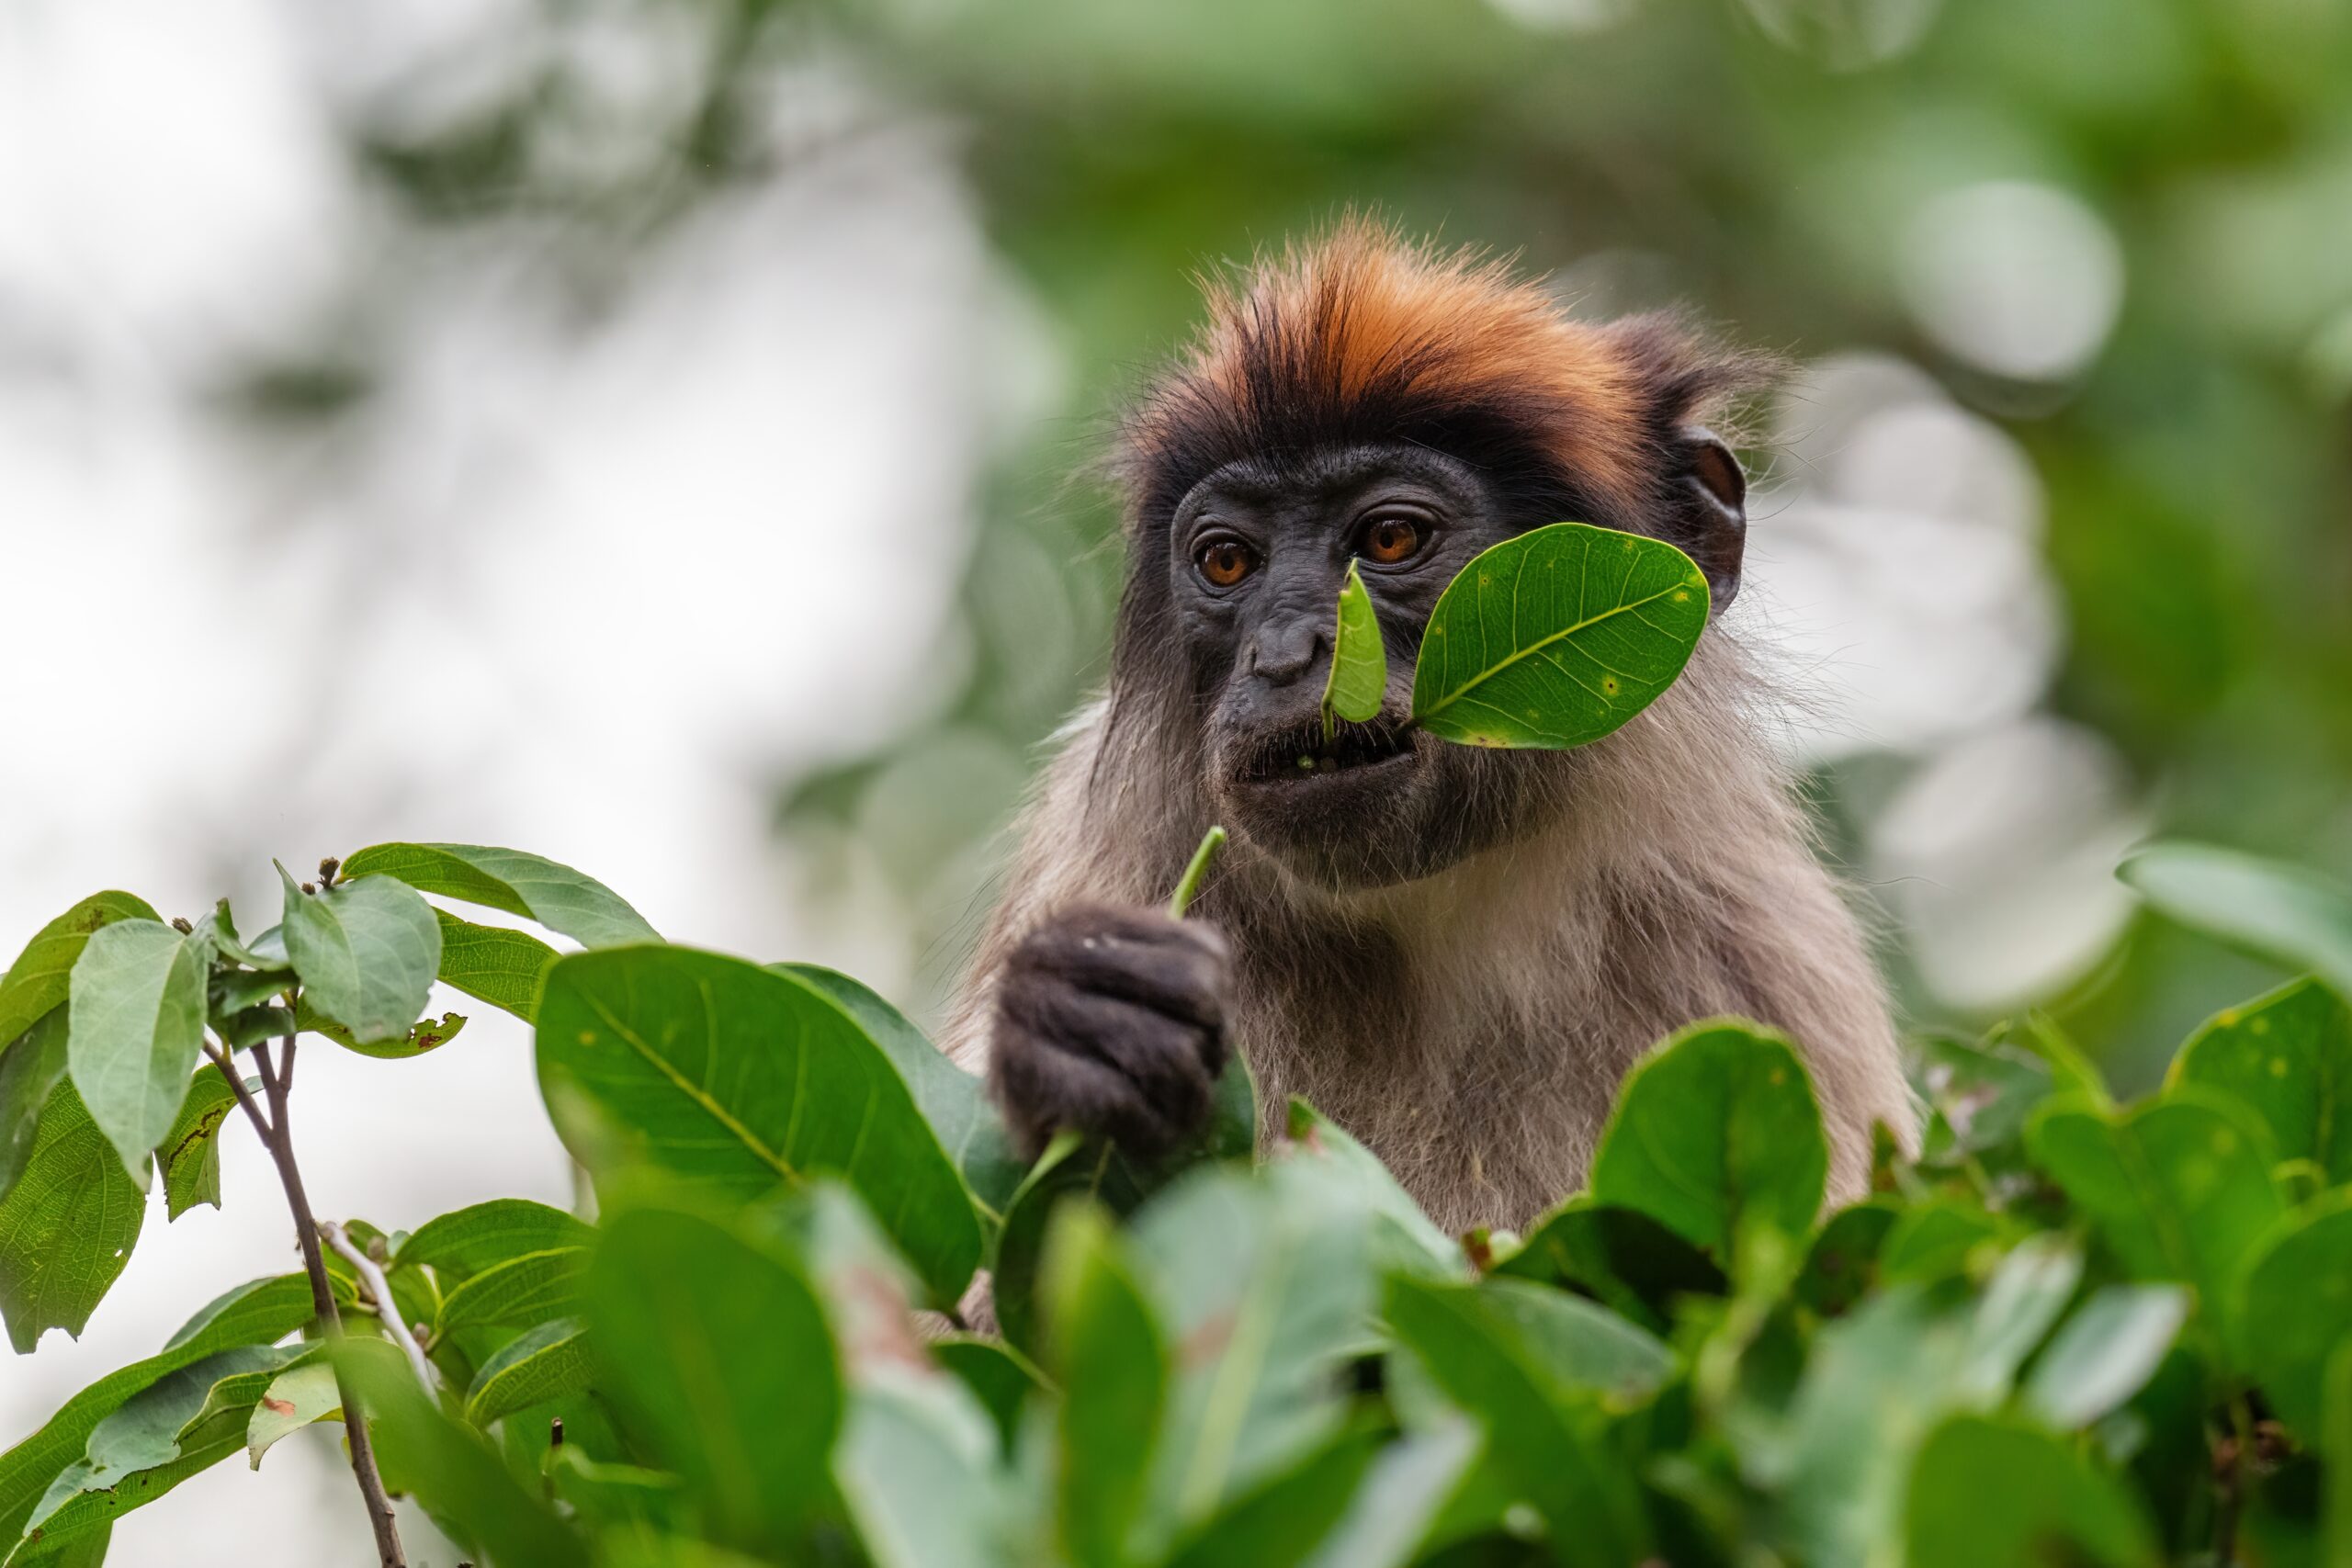 Sequenciamento de Genomas de Primatas Ajuda a Compreender Doenças Humanas